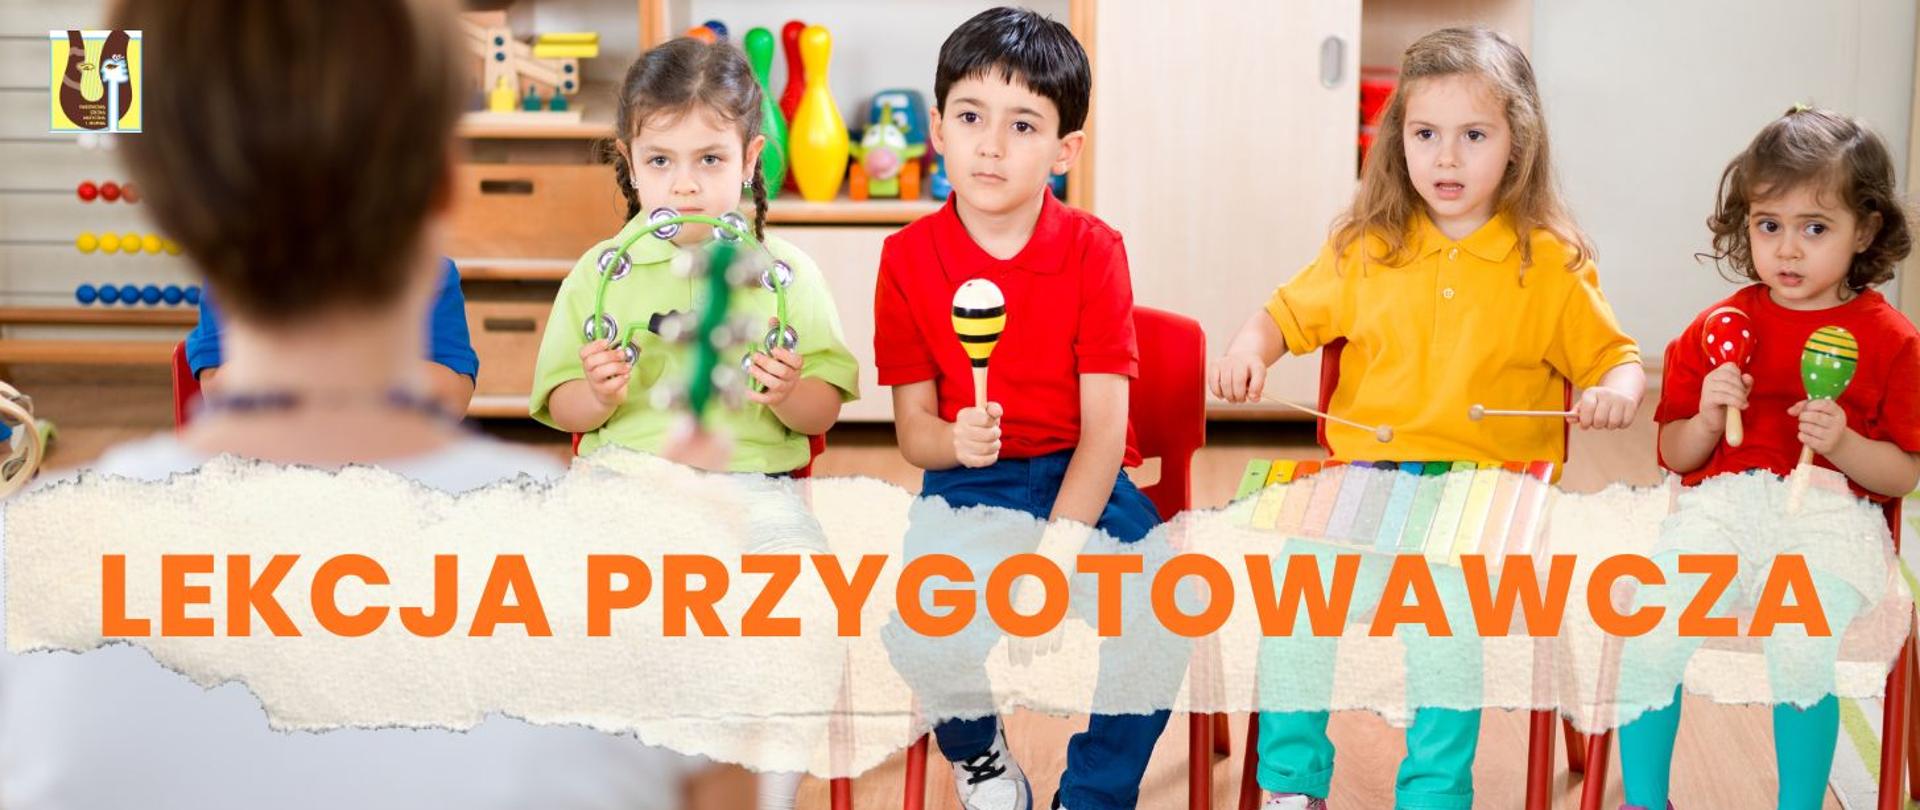 czworo dzieci grających na instrumentach perkusyjnych, na pierwszym planie nauczycielka, w prawym górnym rogu znajduje się logo szkoły muzycznej, napis "Lekcja przygotowawcza" w kolorze pomarańczowym